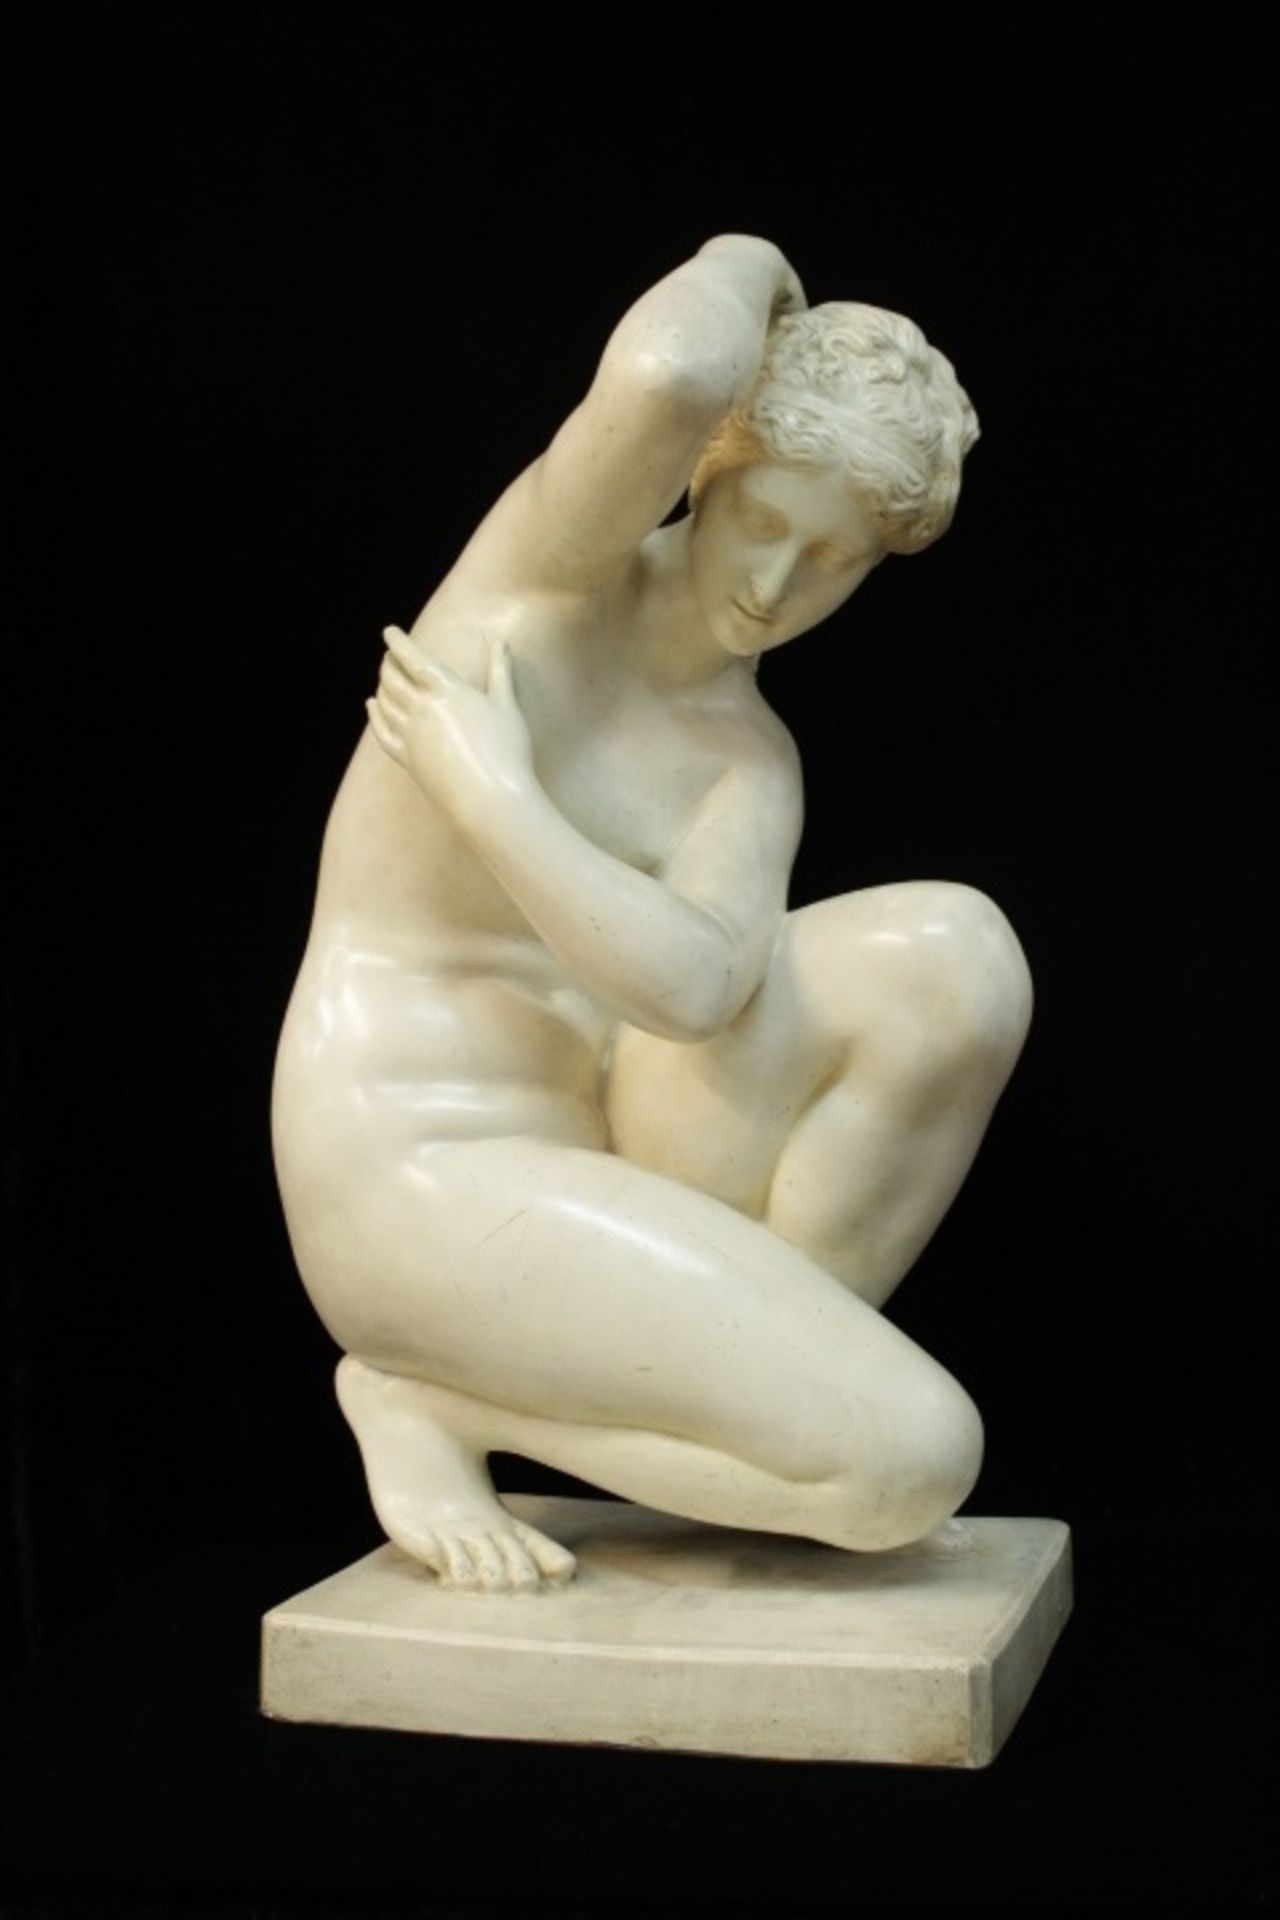 Mädchen Akt Skulptur Knieende « ungemarkt sehr dekorativ wohl Gips H:73xm wohl um 1900